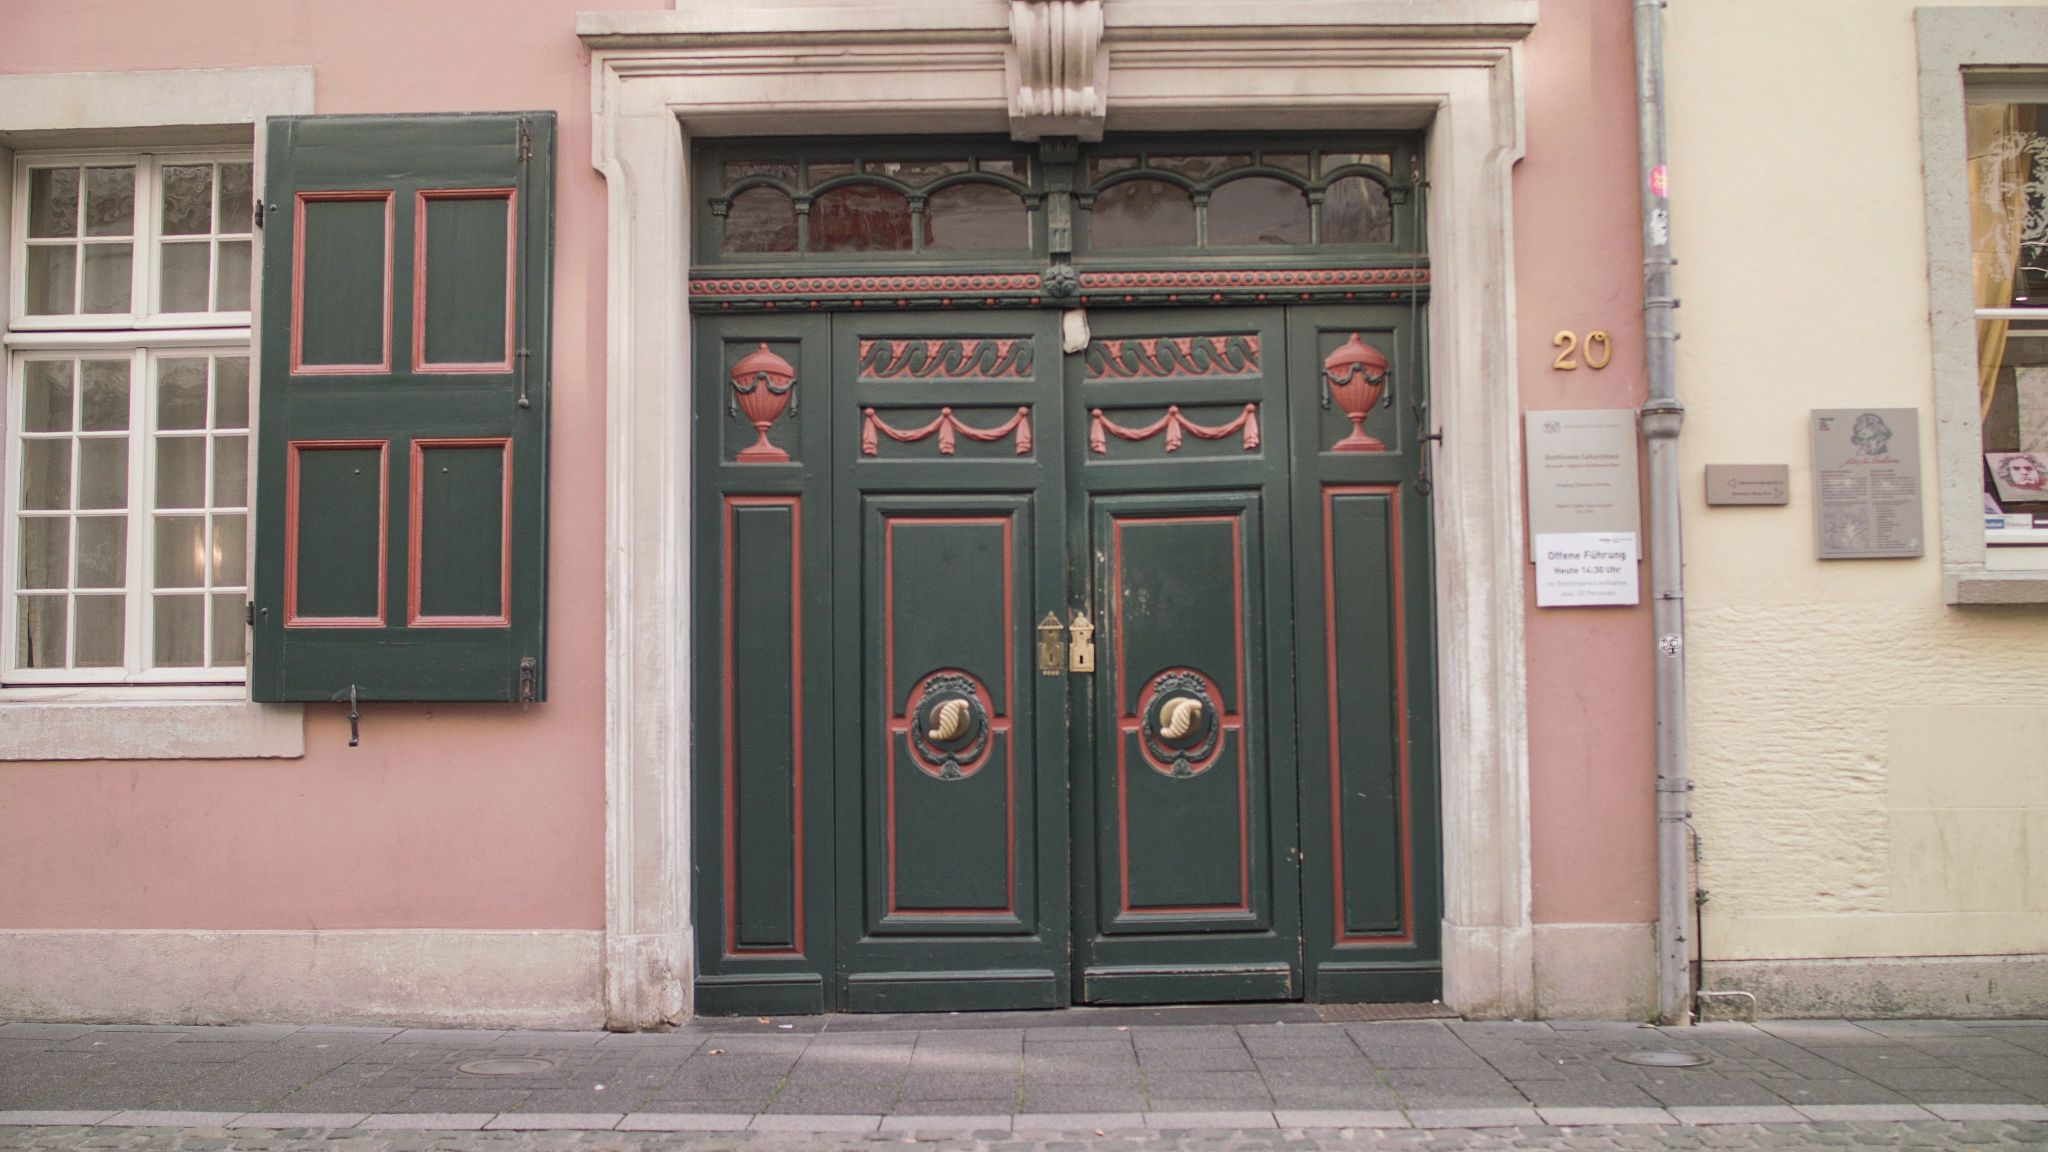 Geburtshaus Beethoven Eingangstüre
© Tourismus NRW E.V.